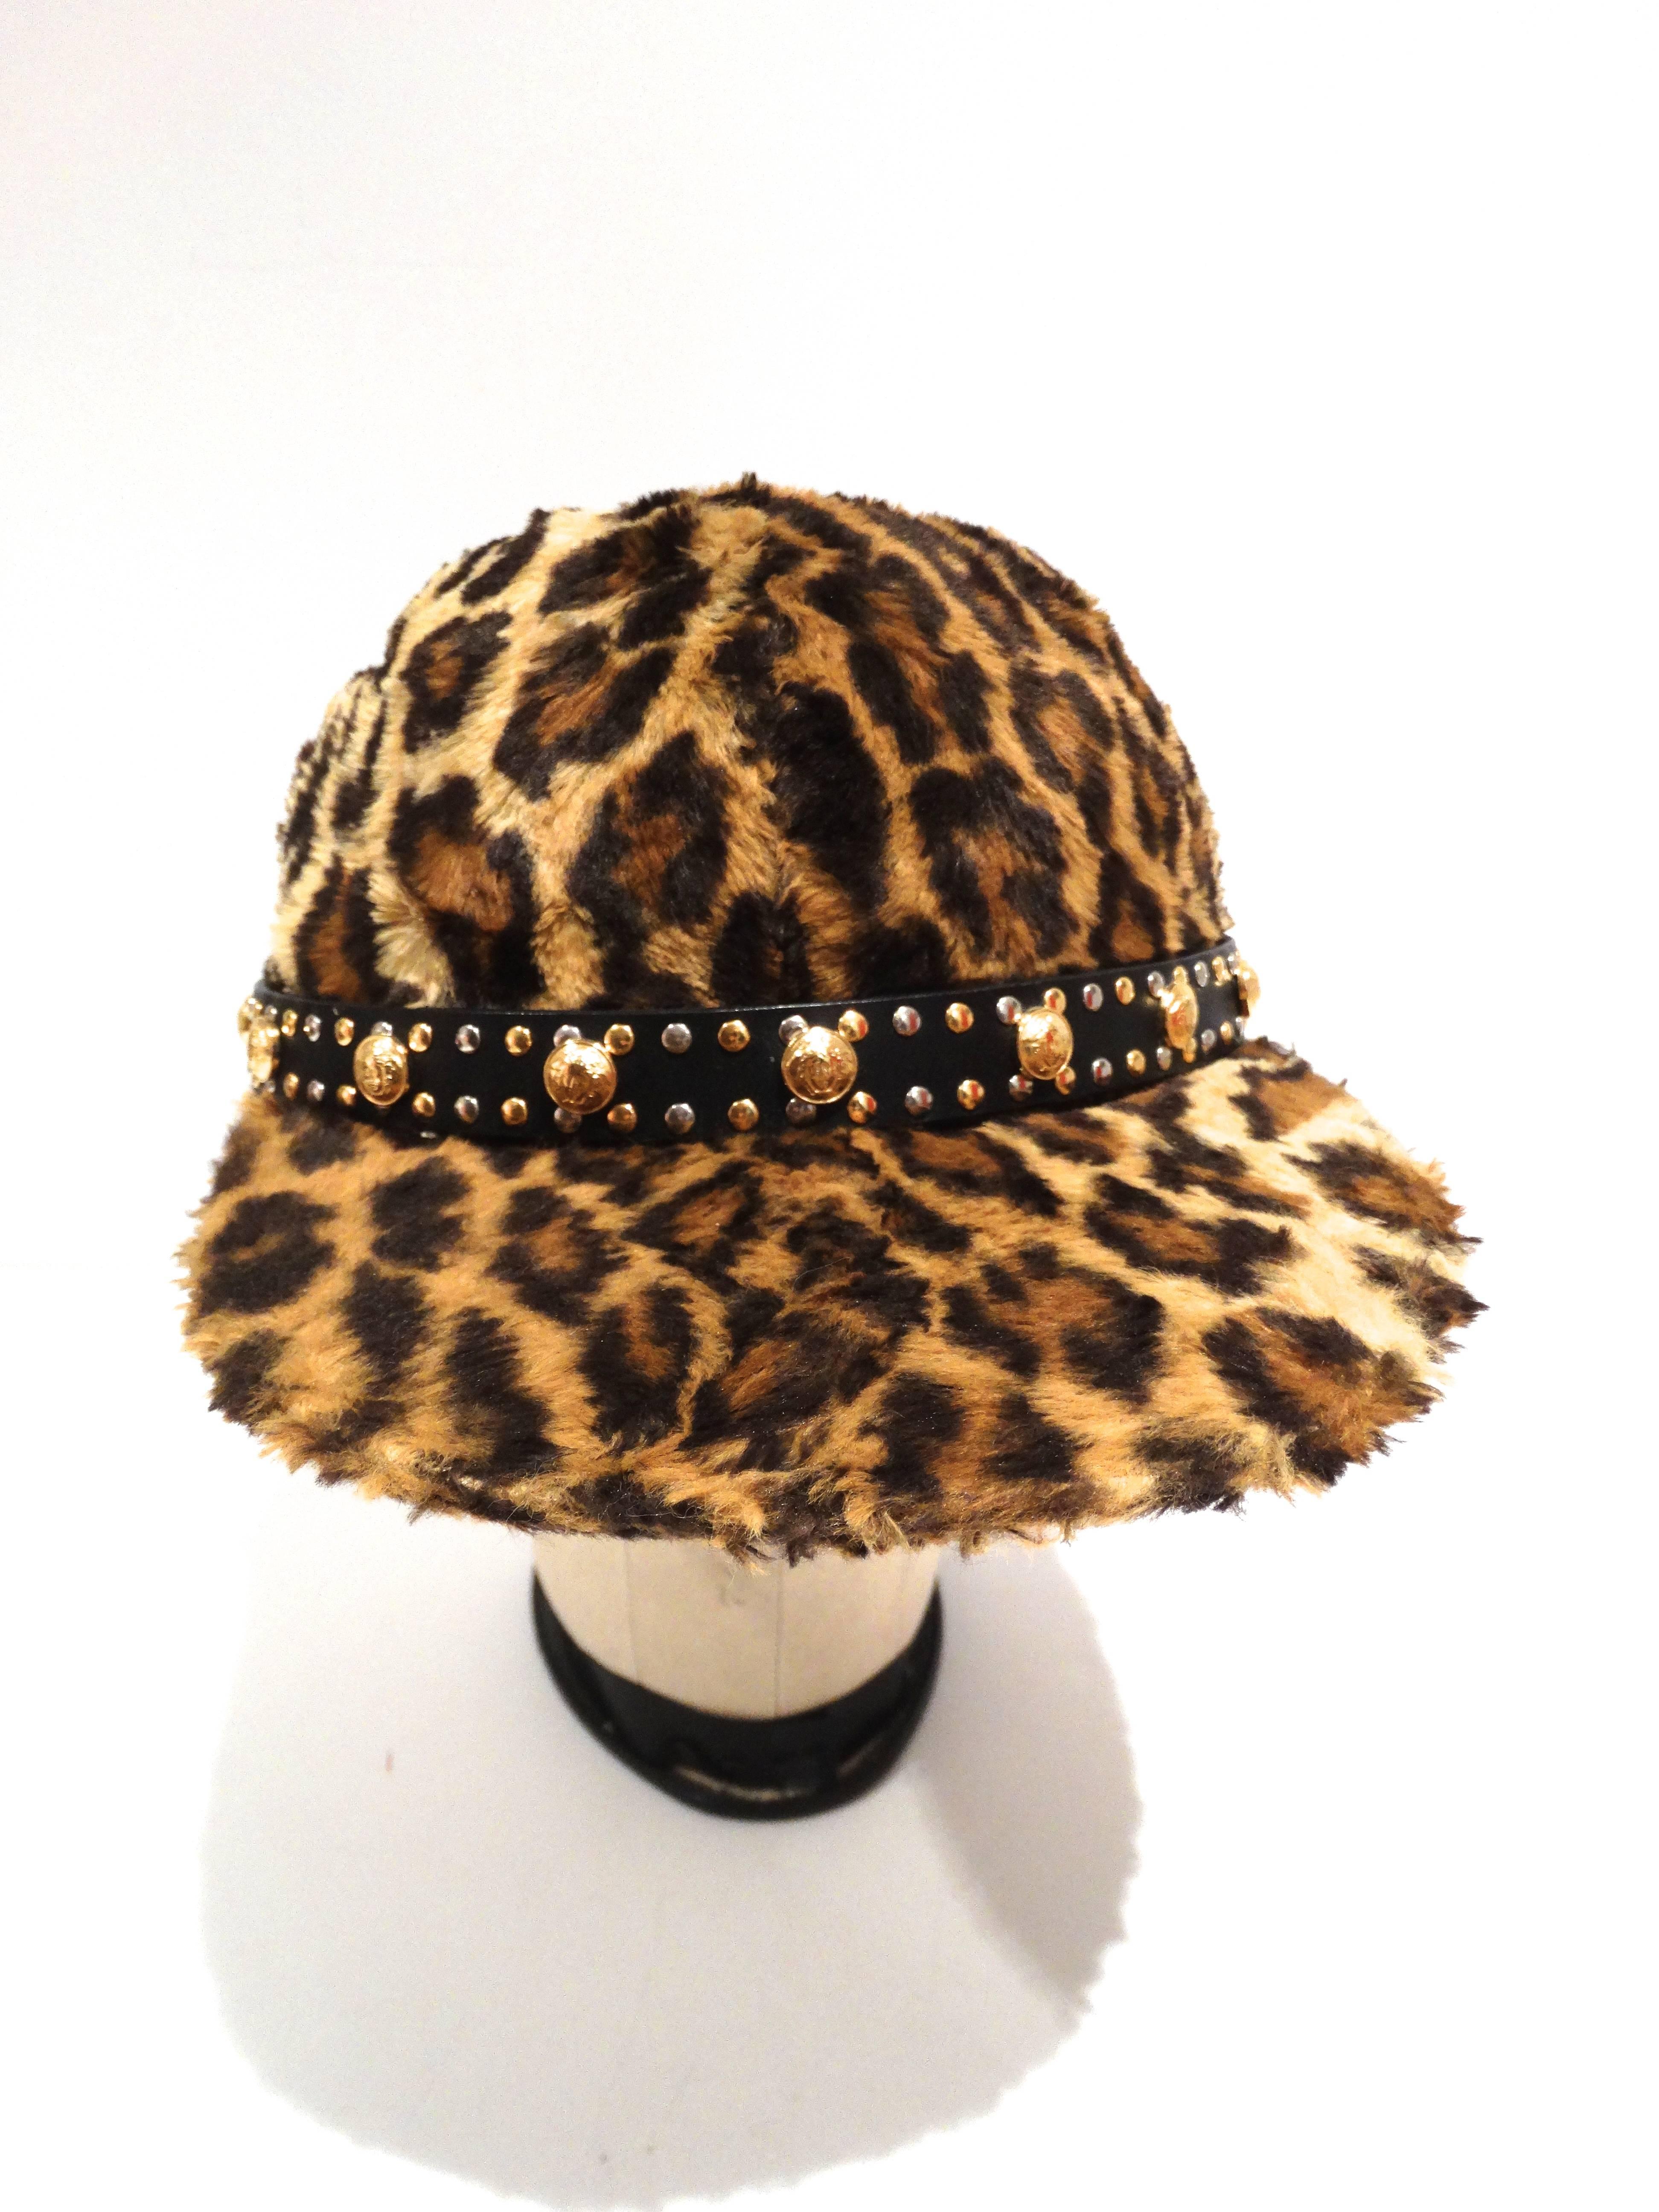 Véritable pièce de collection, cette casquette de baseball Versace de 1992 est recouverte de fausse fourrure léopard, d'une ceinture en cuir avec des têtes de méduses dorées et des clous argentés et dorés. Cette casquette est munie d'une boucle en